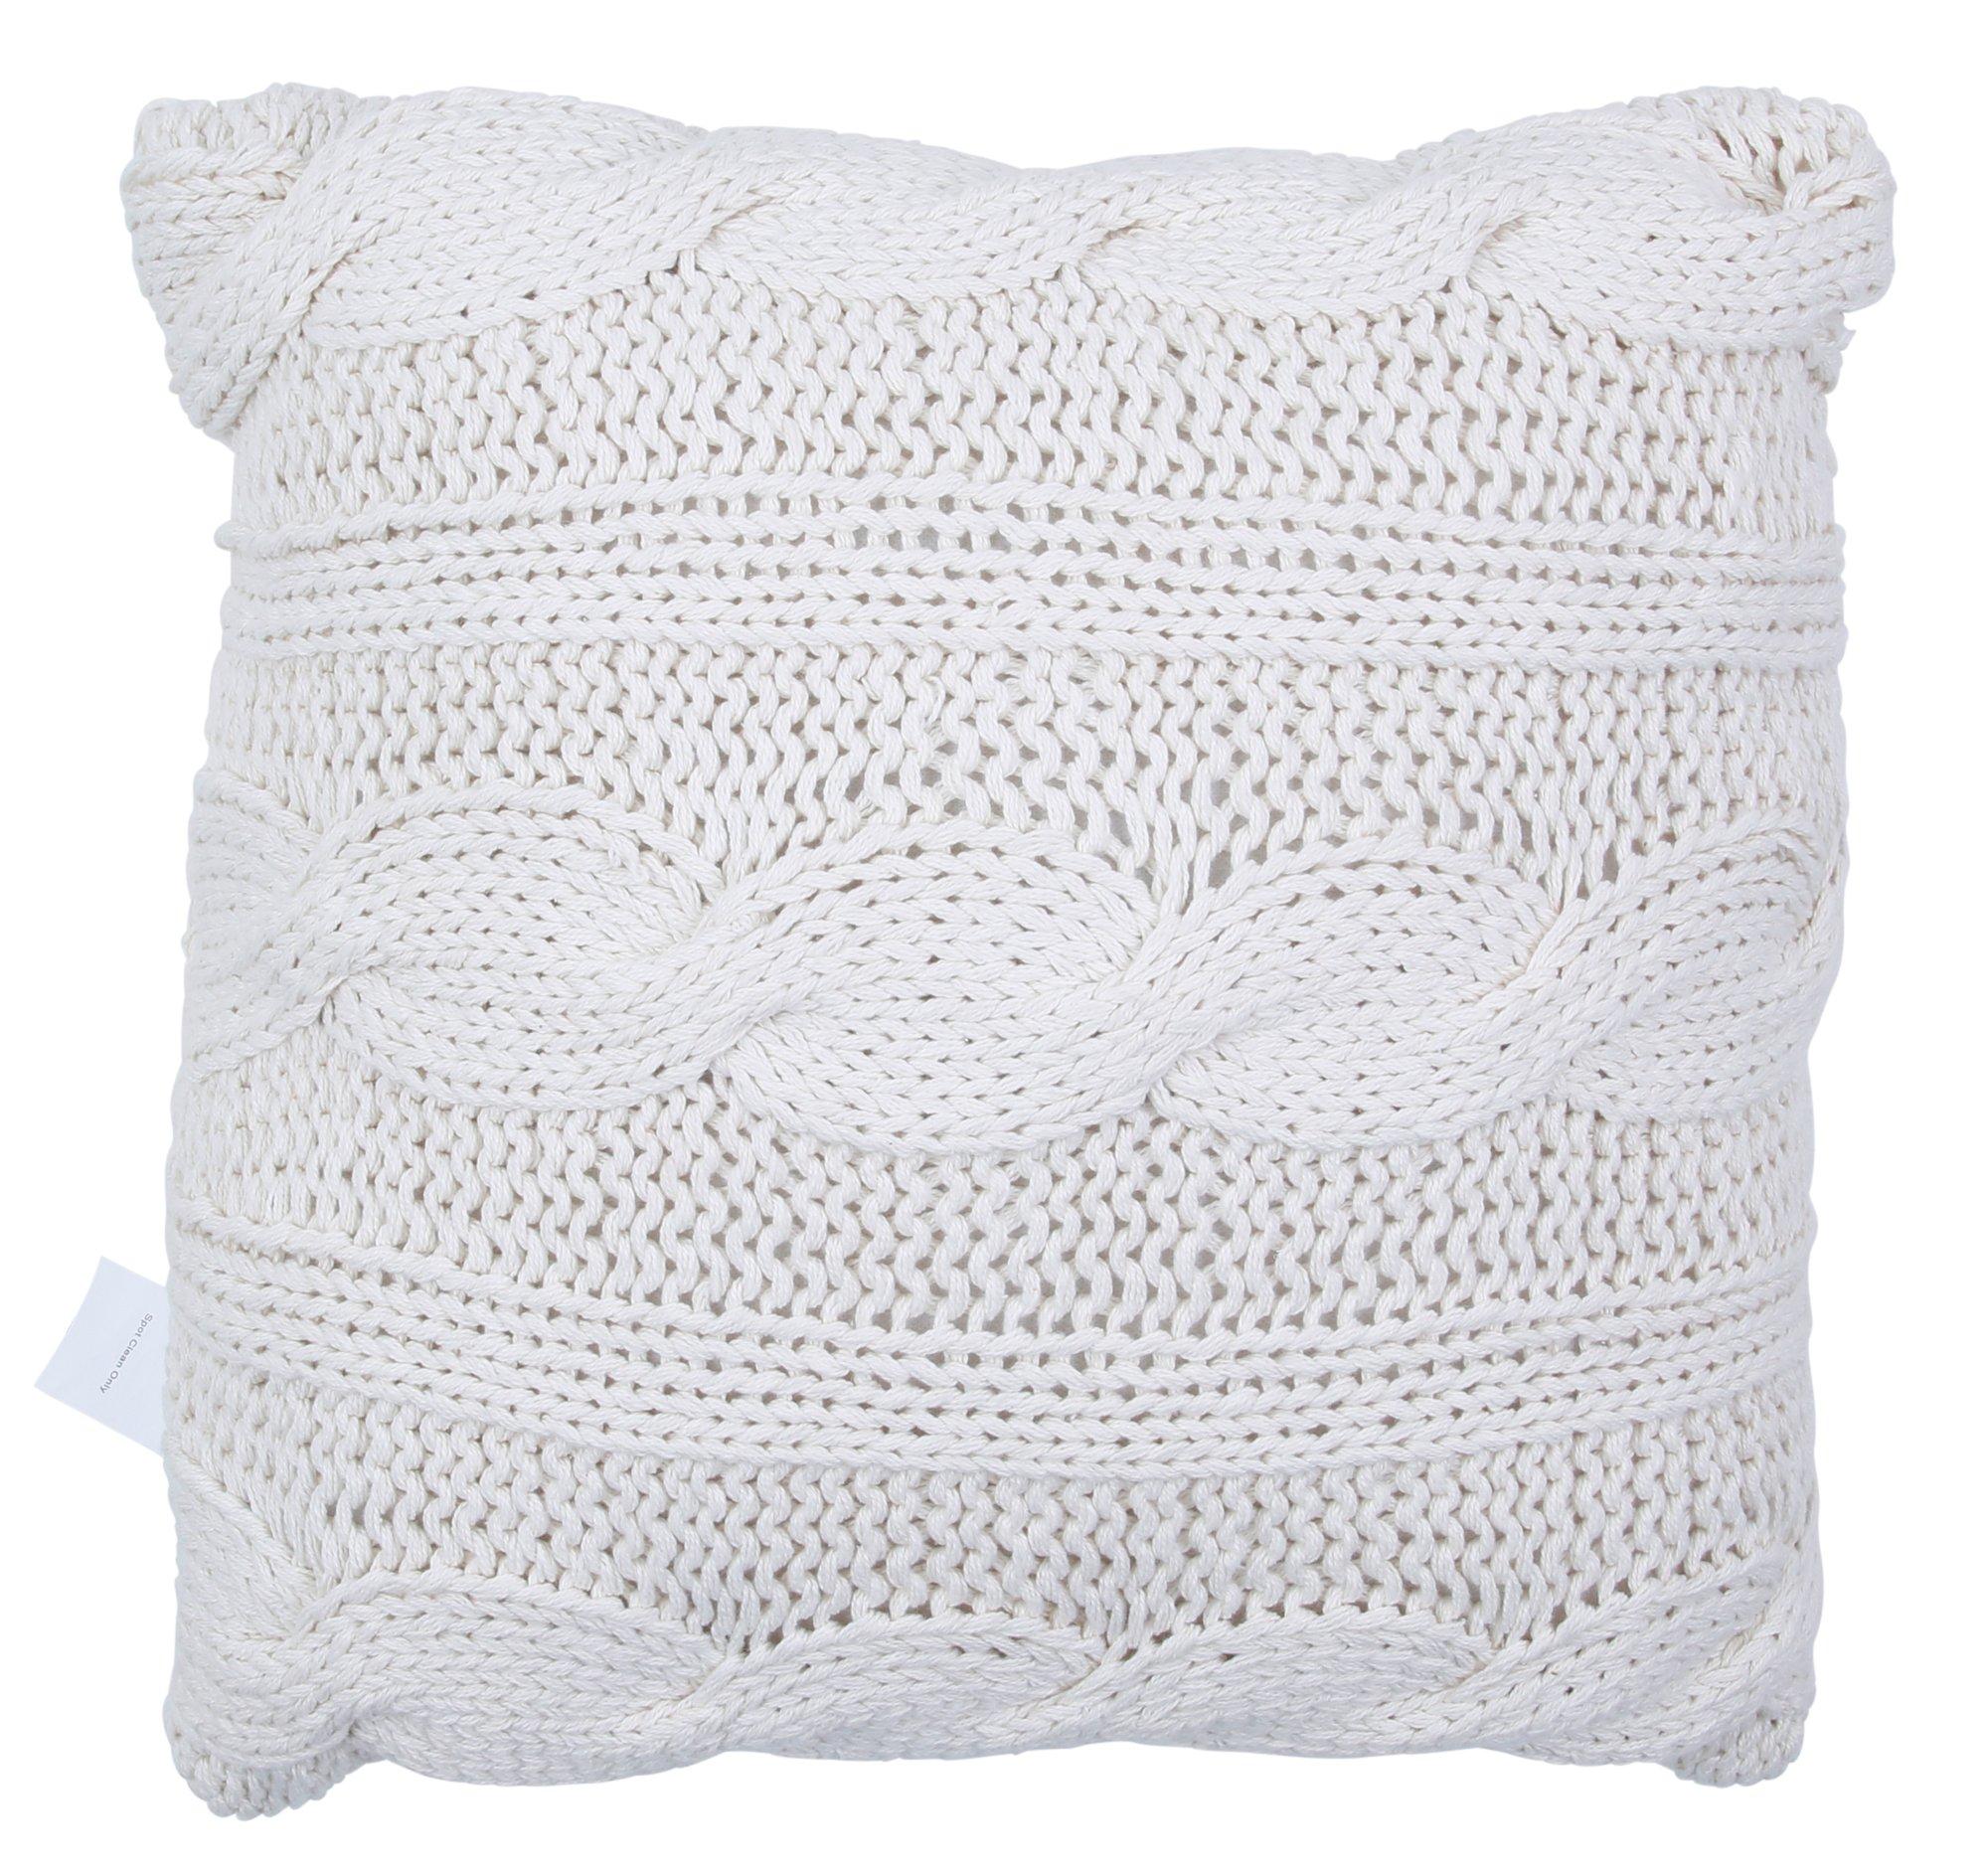 18x18 Crochet Front Throw Pillow